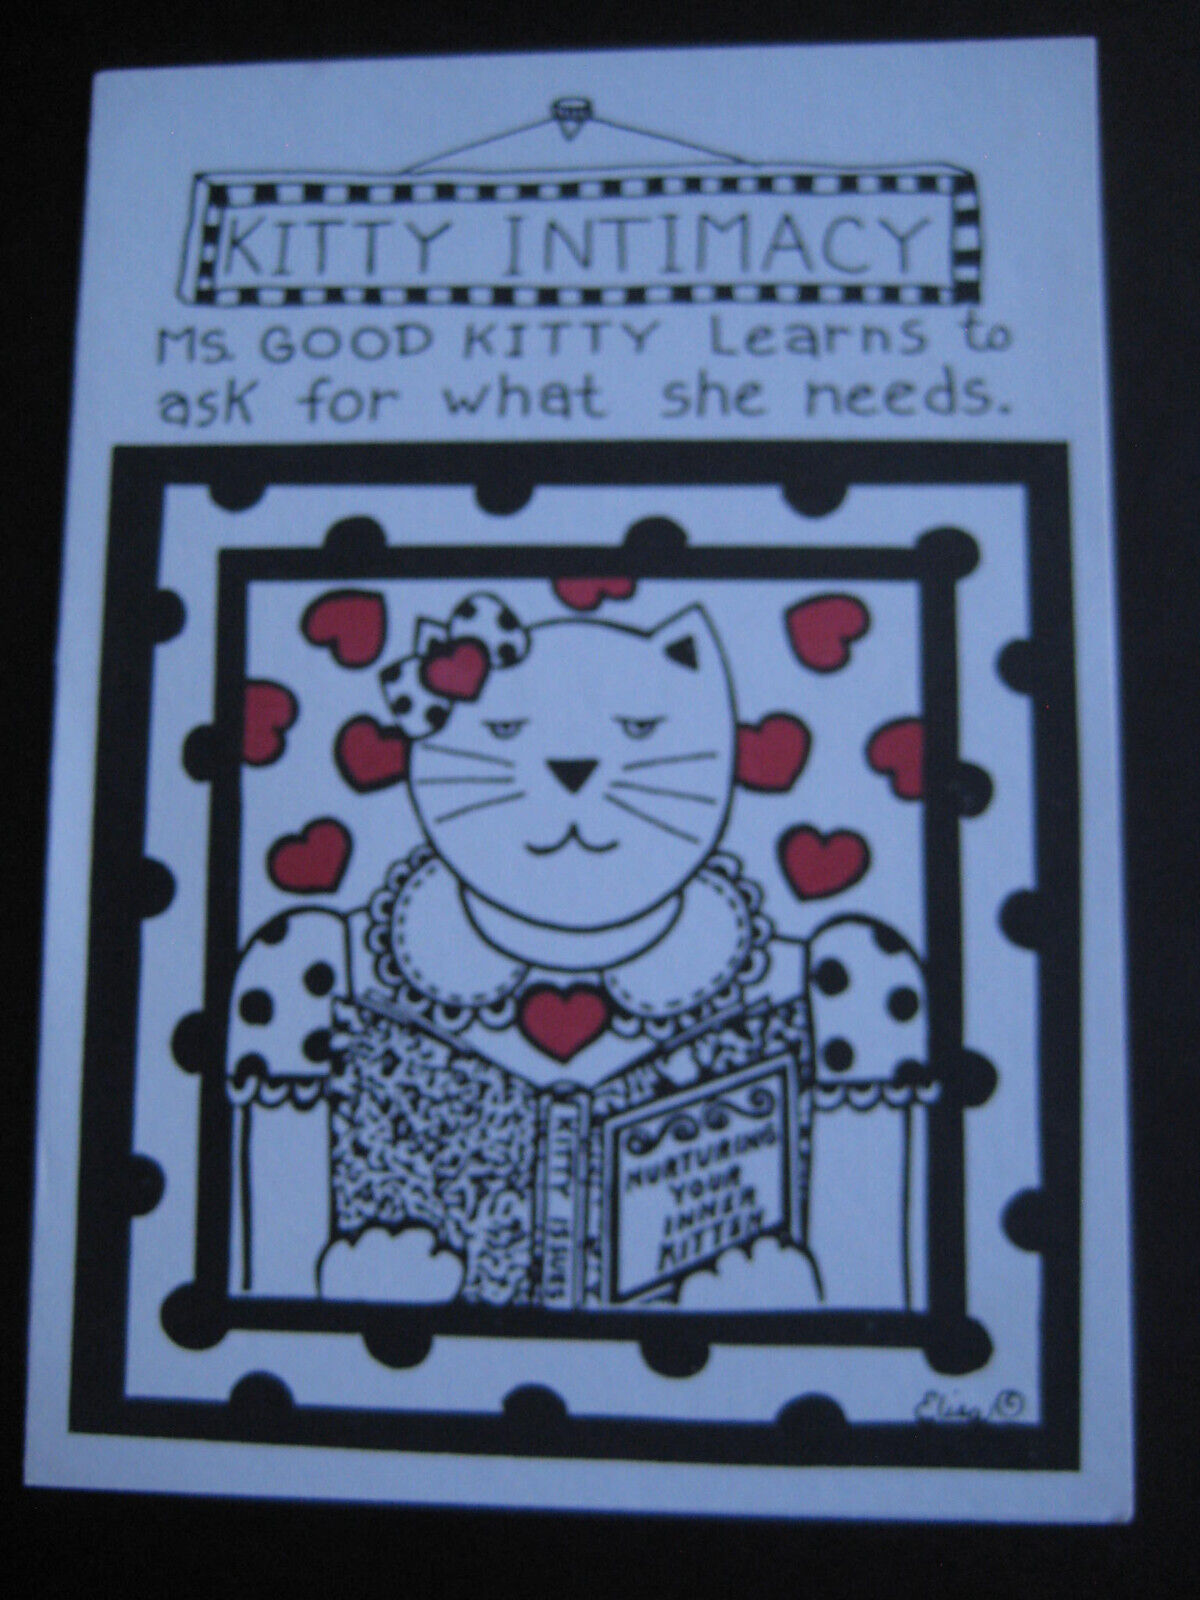 UNUSED vintage greeting card By Elisa - Kitty Intimacy - Pet Me, Pet Me, Pet Me